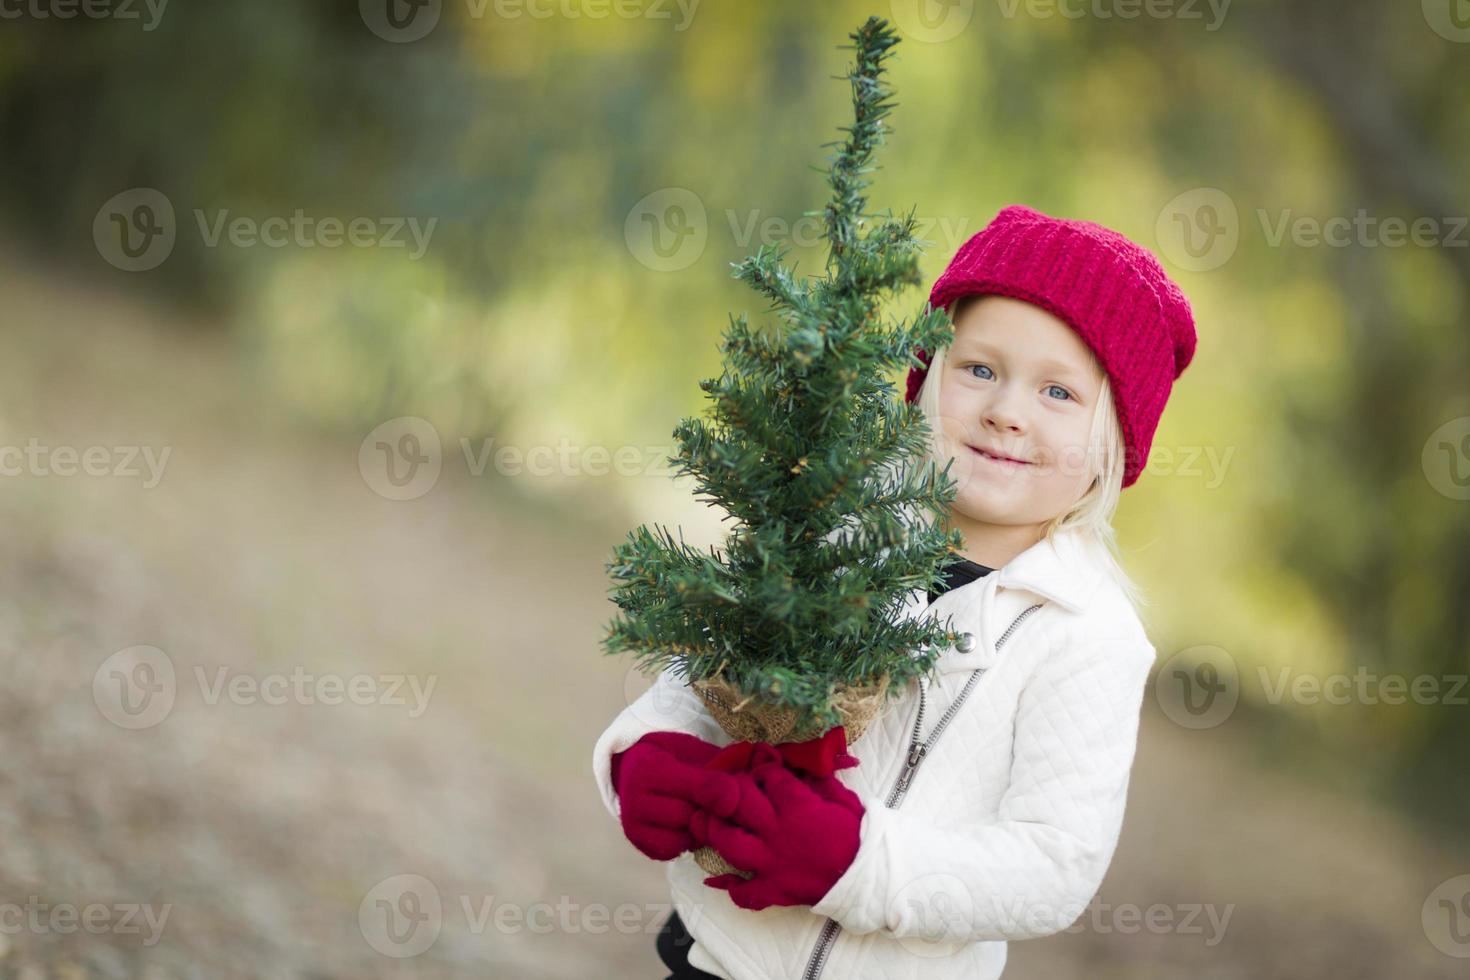 bebis flicka i röd vantar och keps innehav små jul träd foto